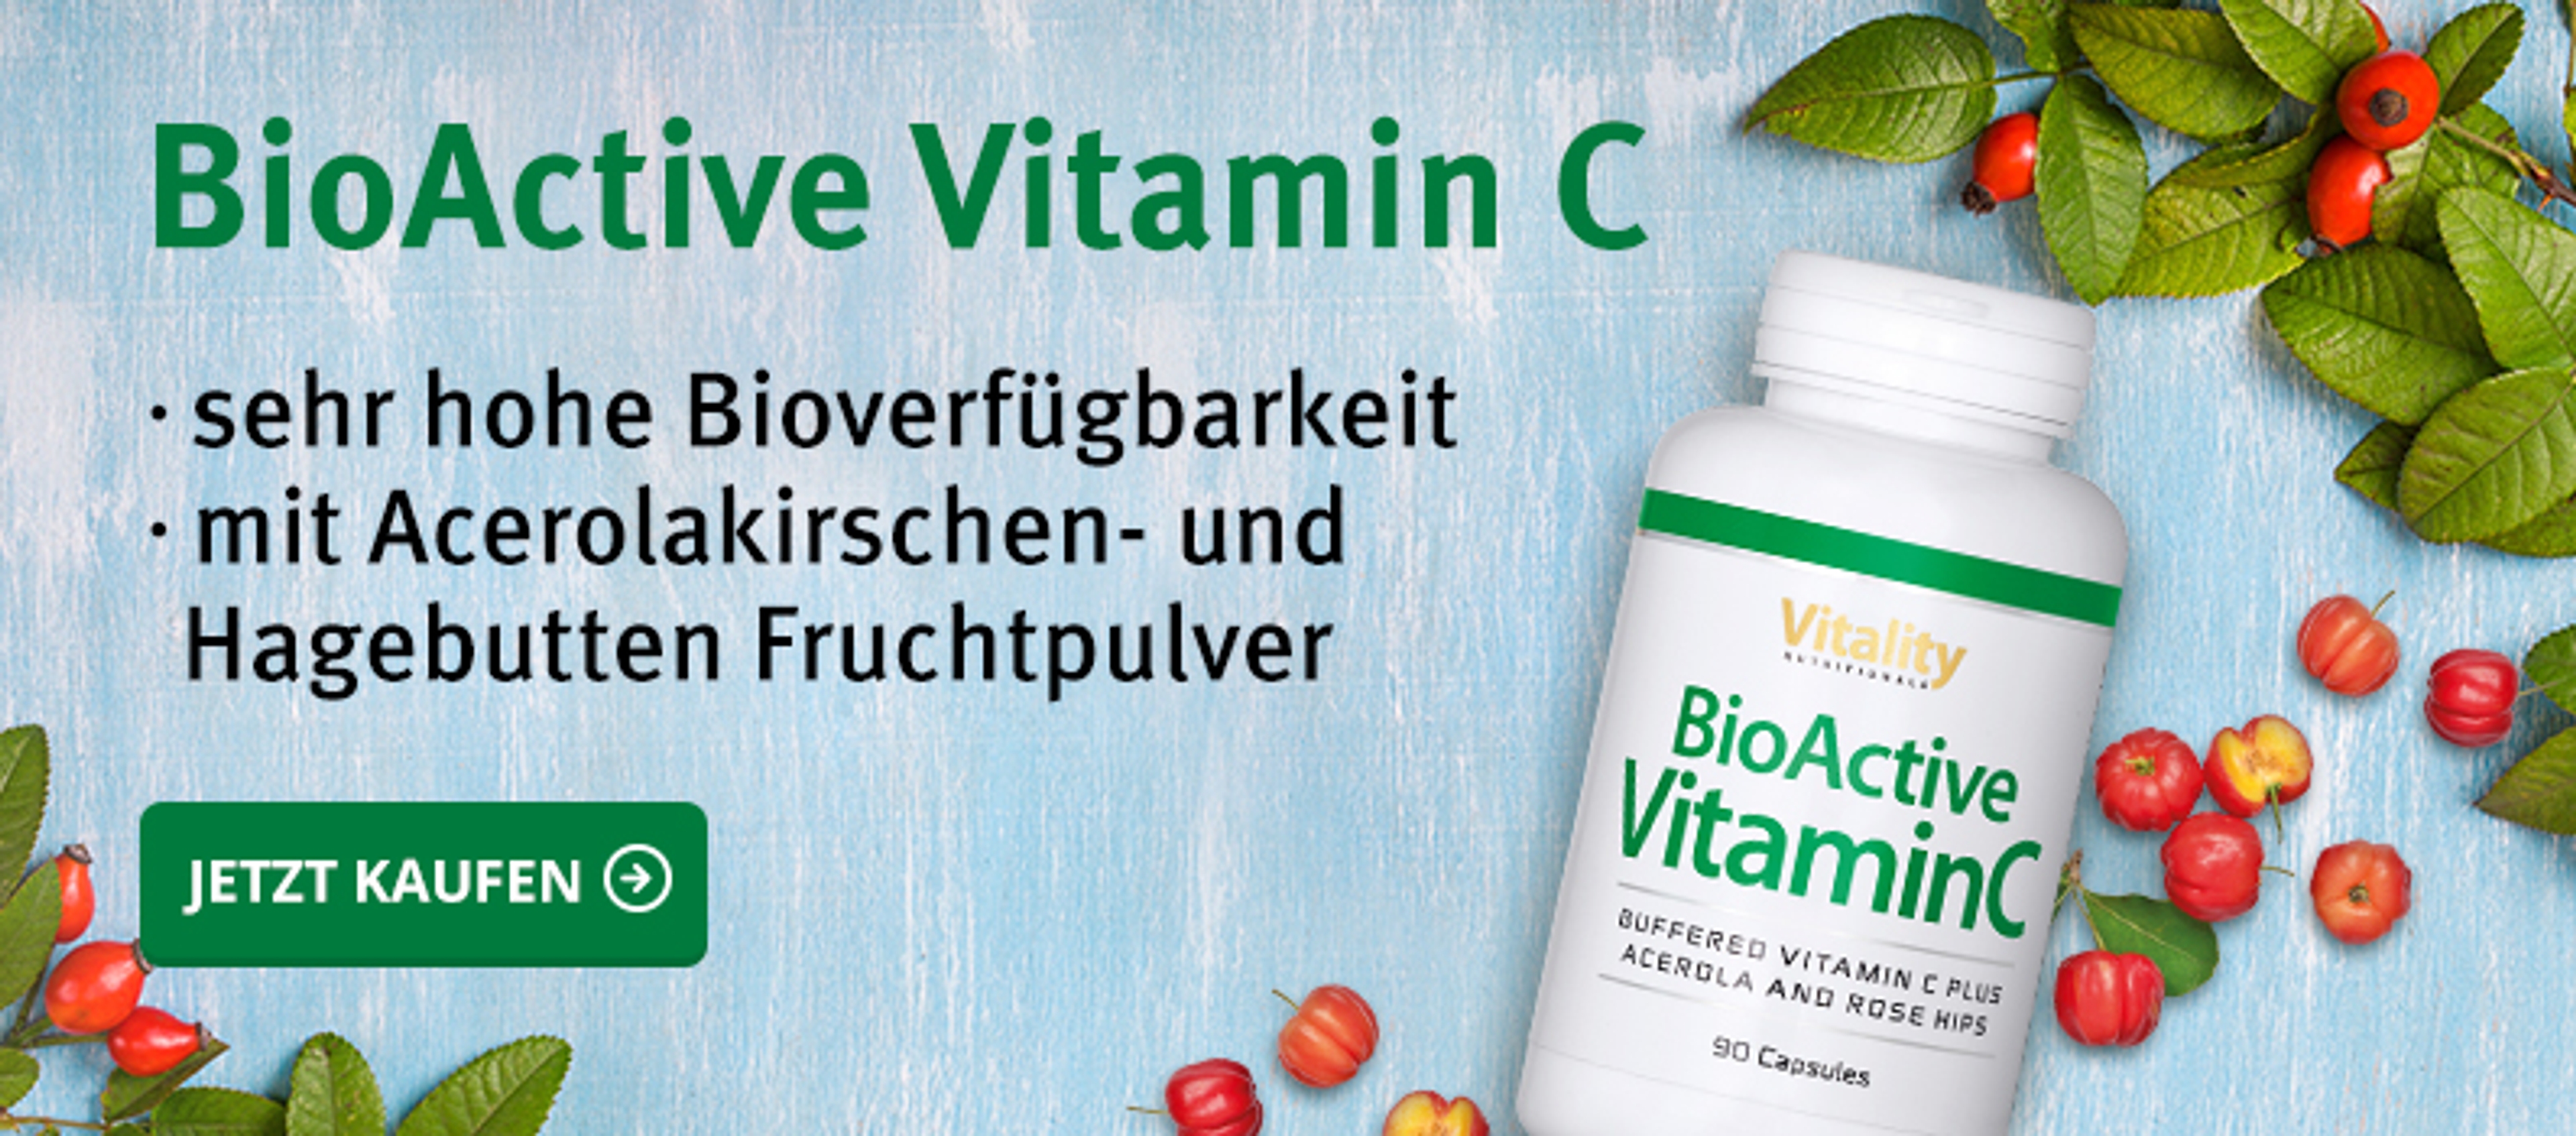 DACH BioActive Vitamin C